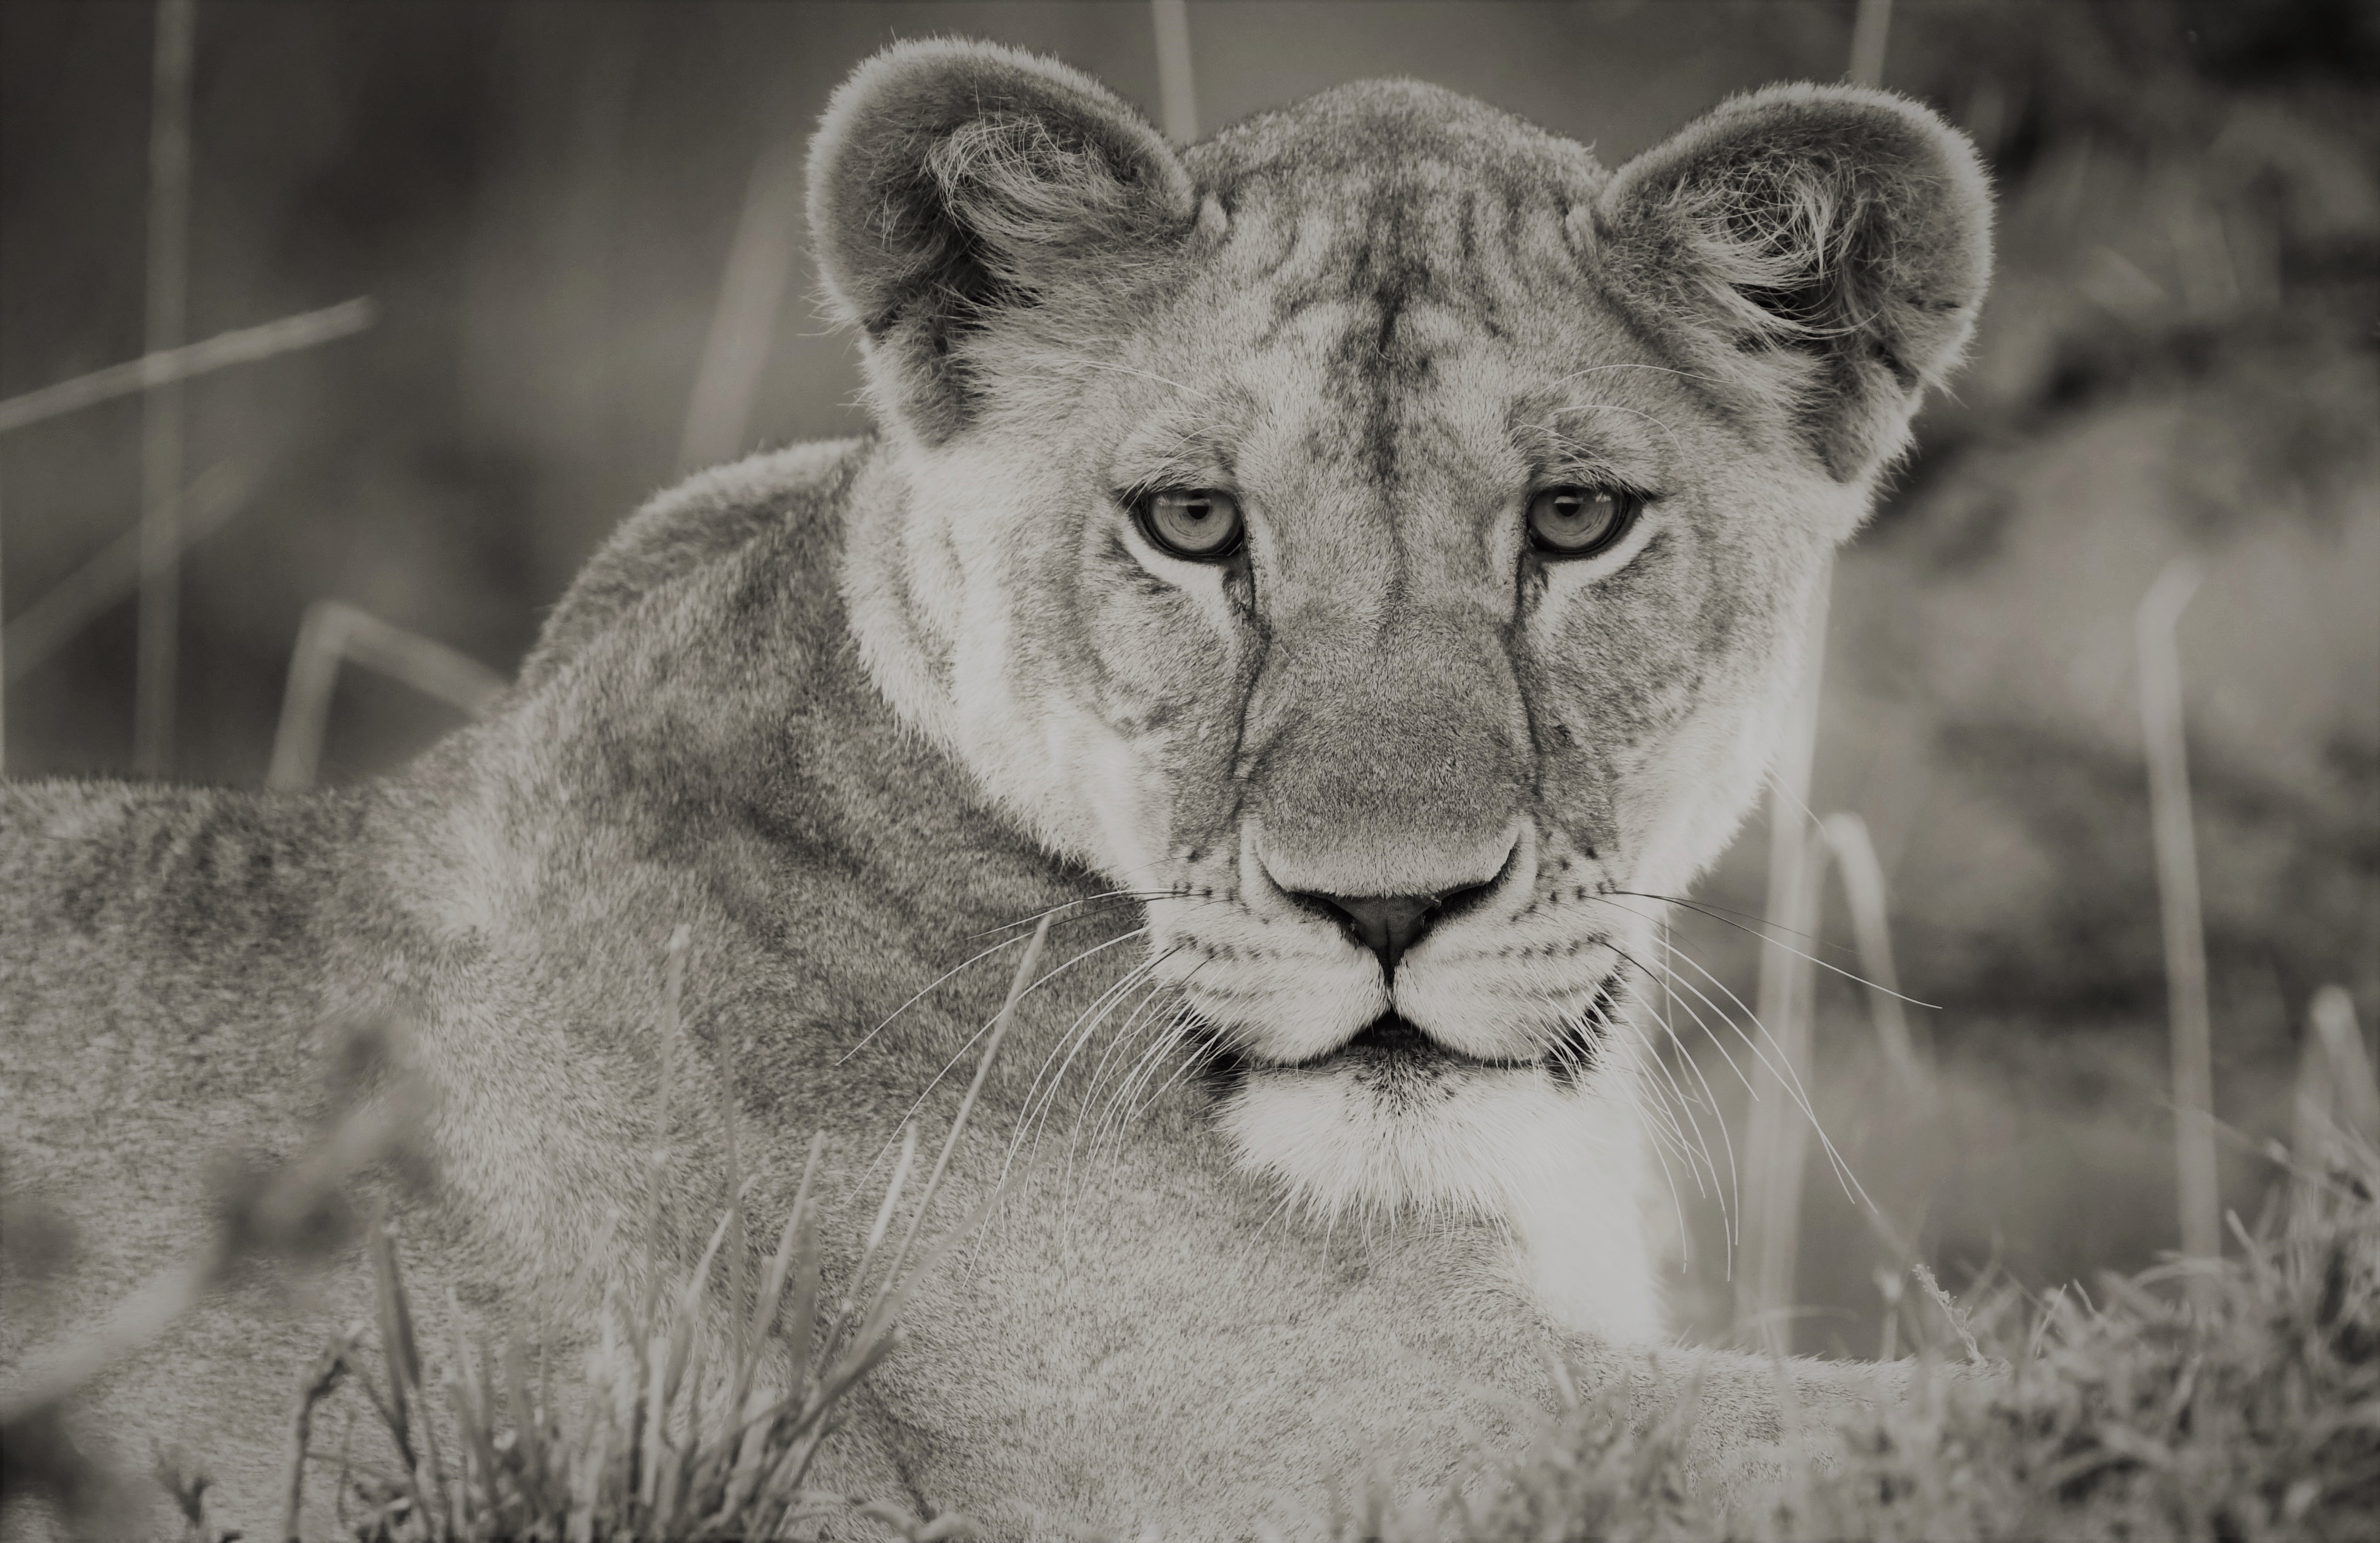 Free download wallpaper Cats, Lion, Animal, Africa, Black & White, Maasai Mara National Reserve, Kenya on your PC desktop